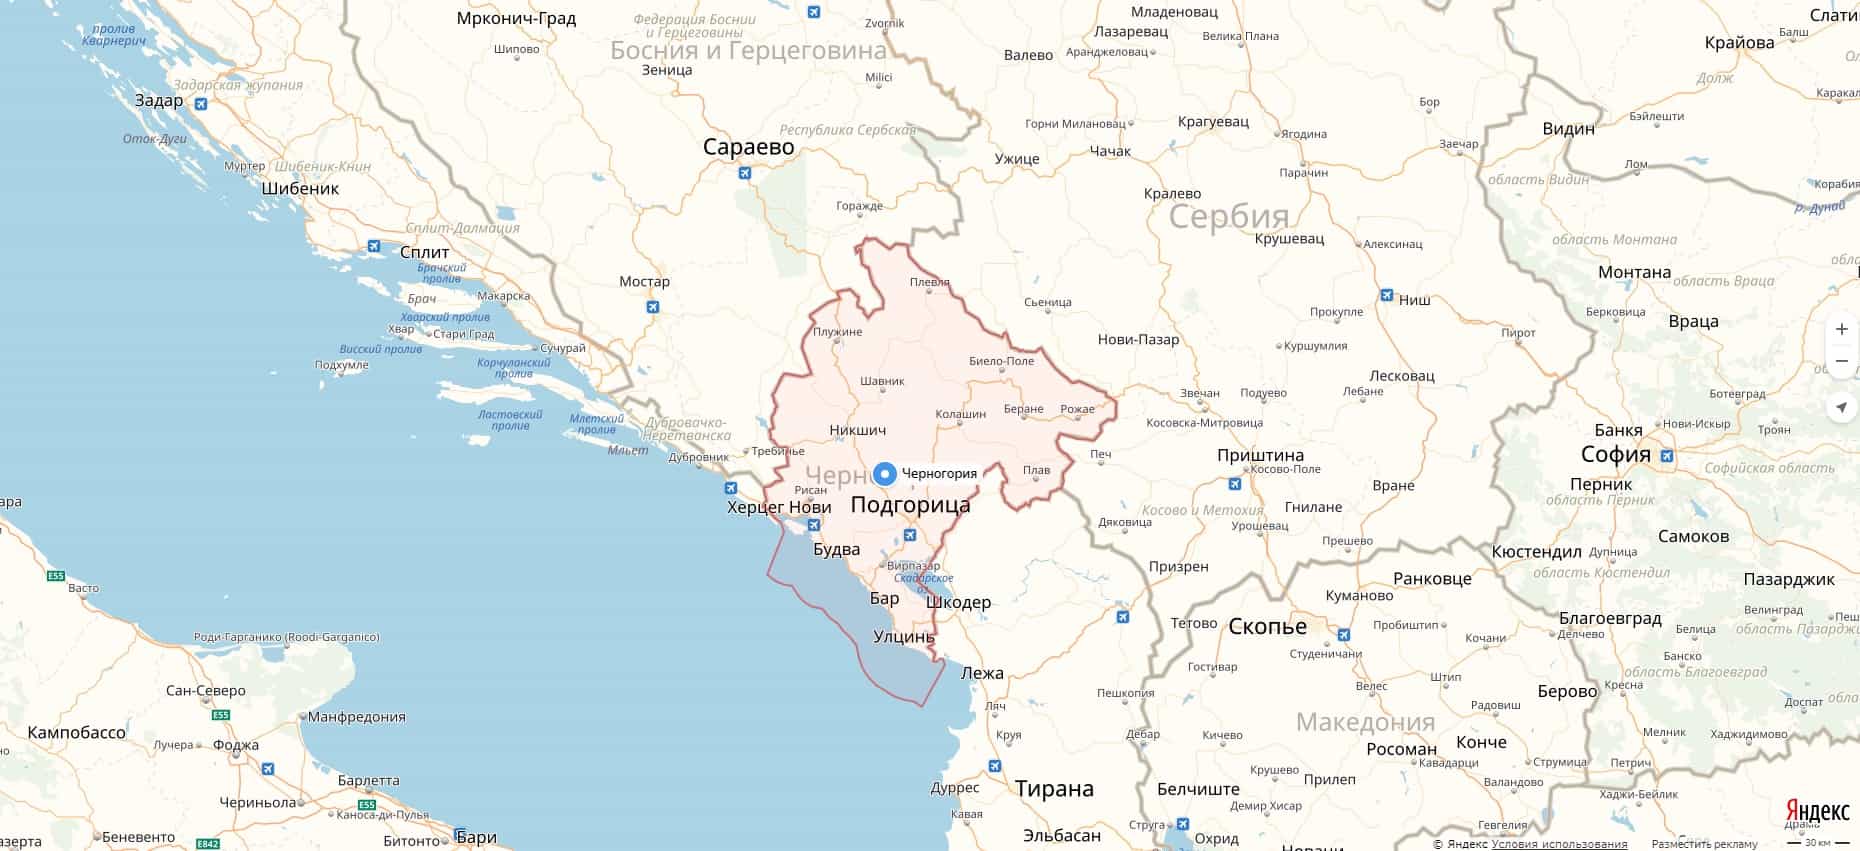 Карта Черногории с городами.